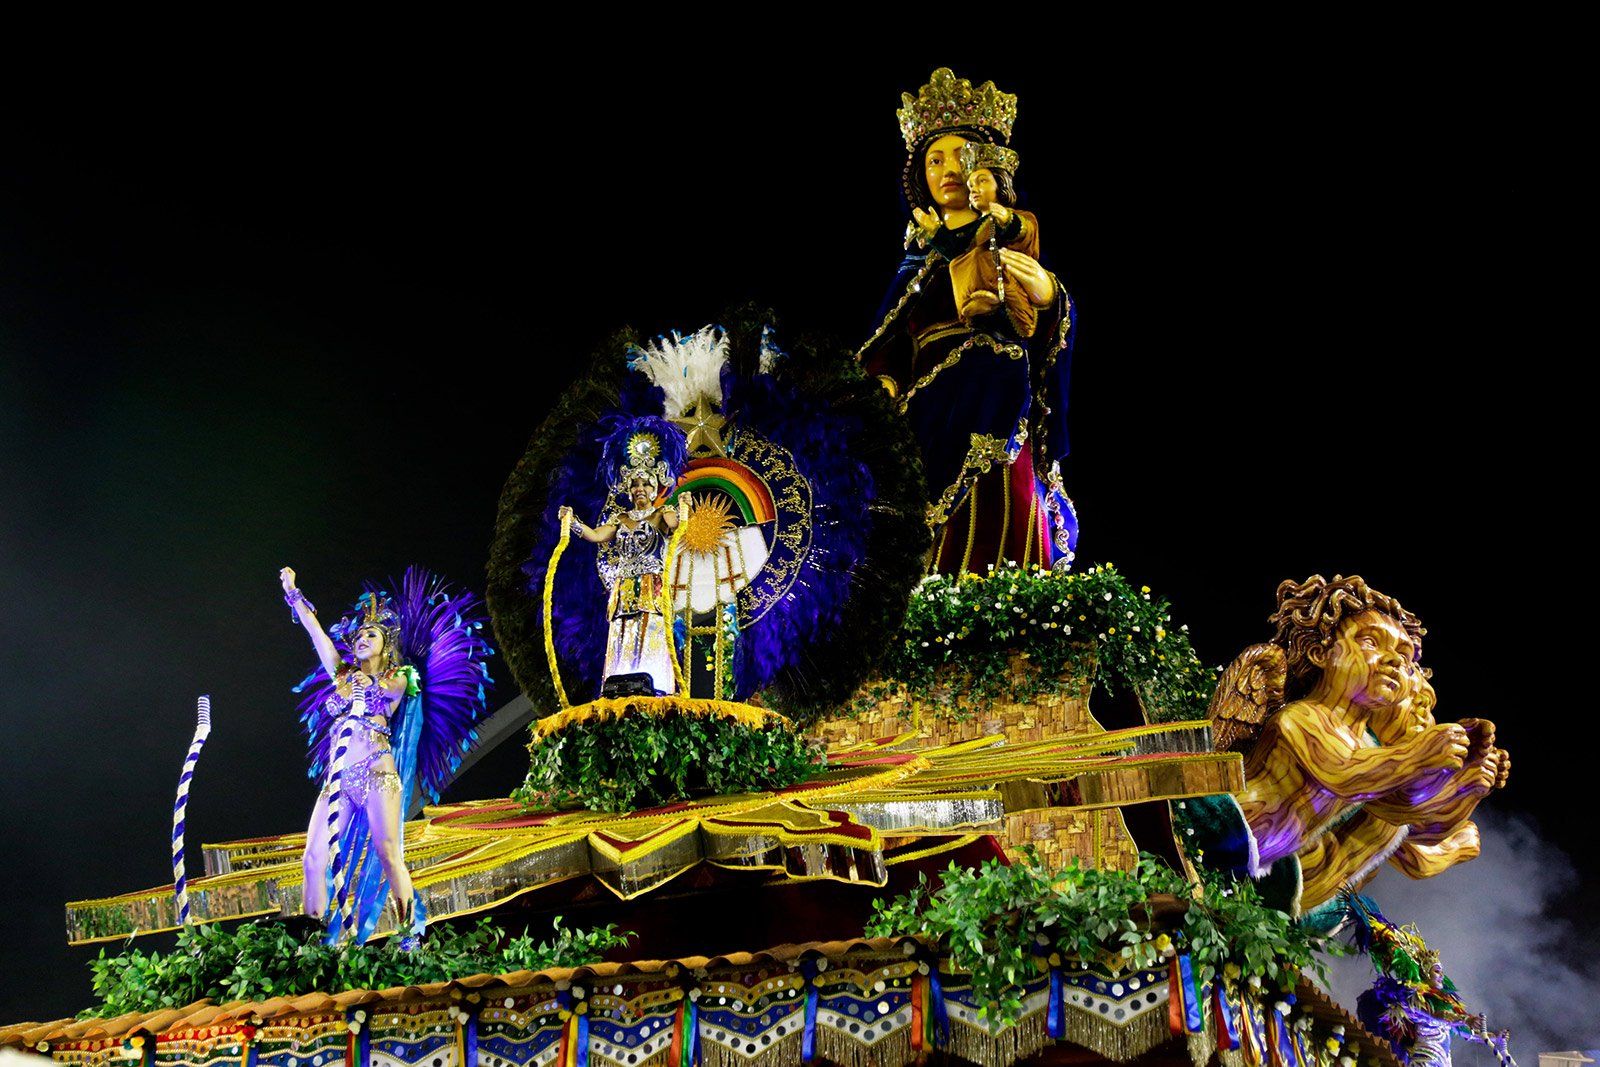 Carnival Float in Brazil